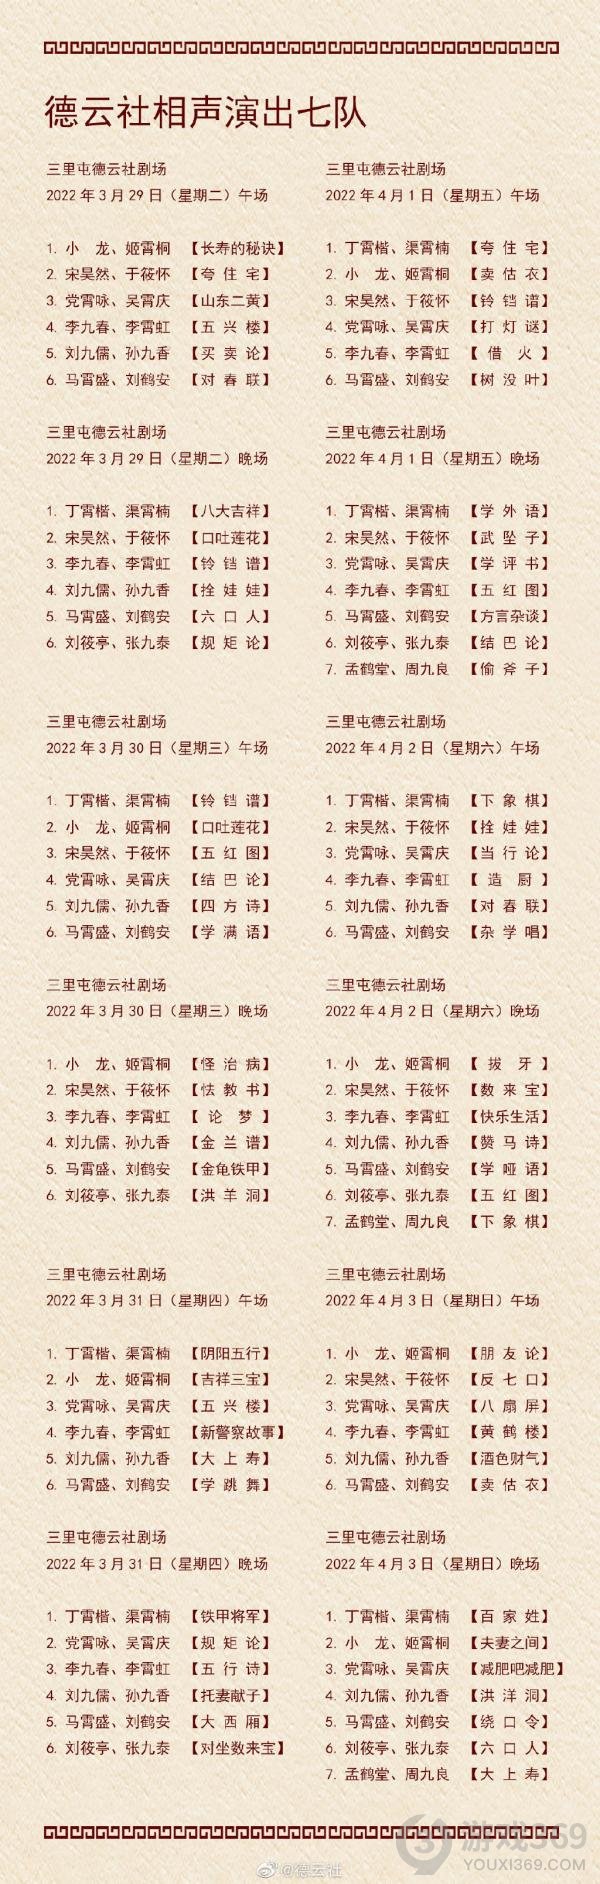 德云社演出节目单2022年3月28日-4月3日